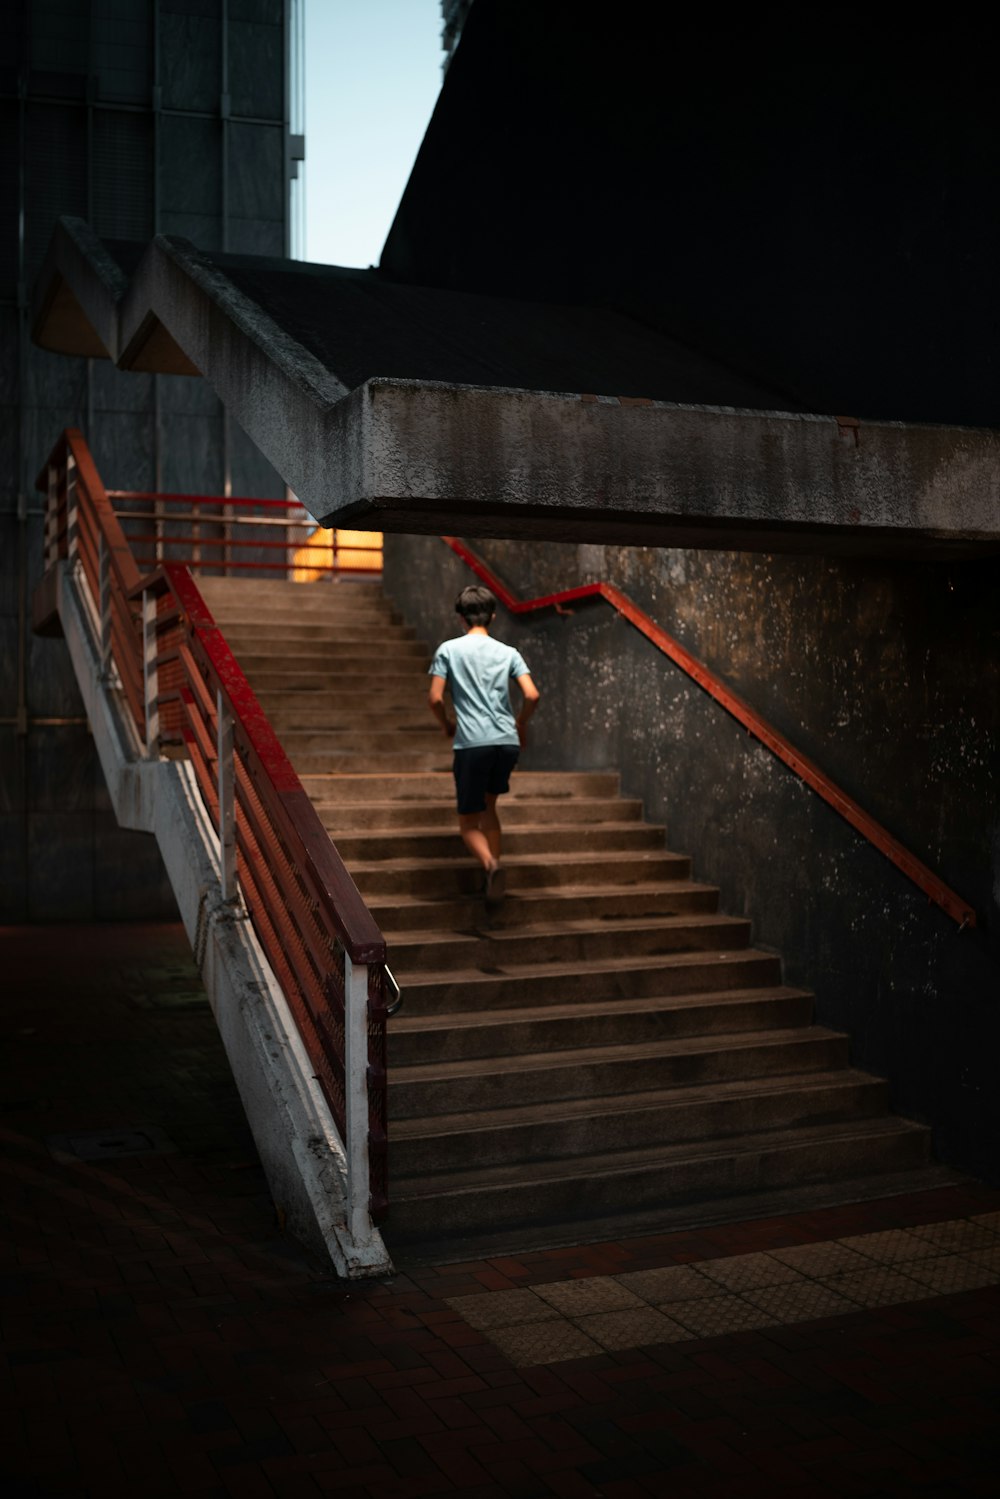 흰 셔츠와 빨간 바지를 입은 남자가 갈색 계단을 걷고 있다